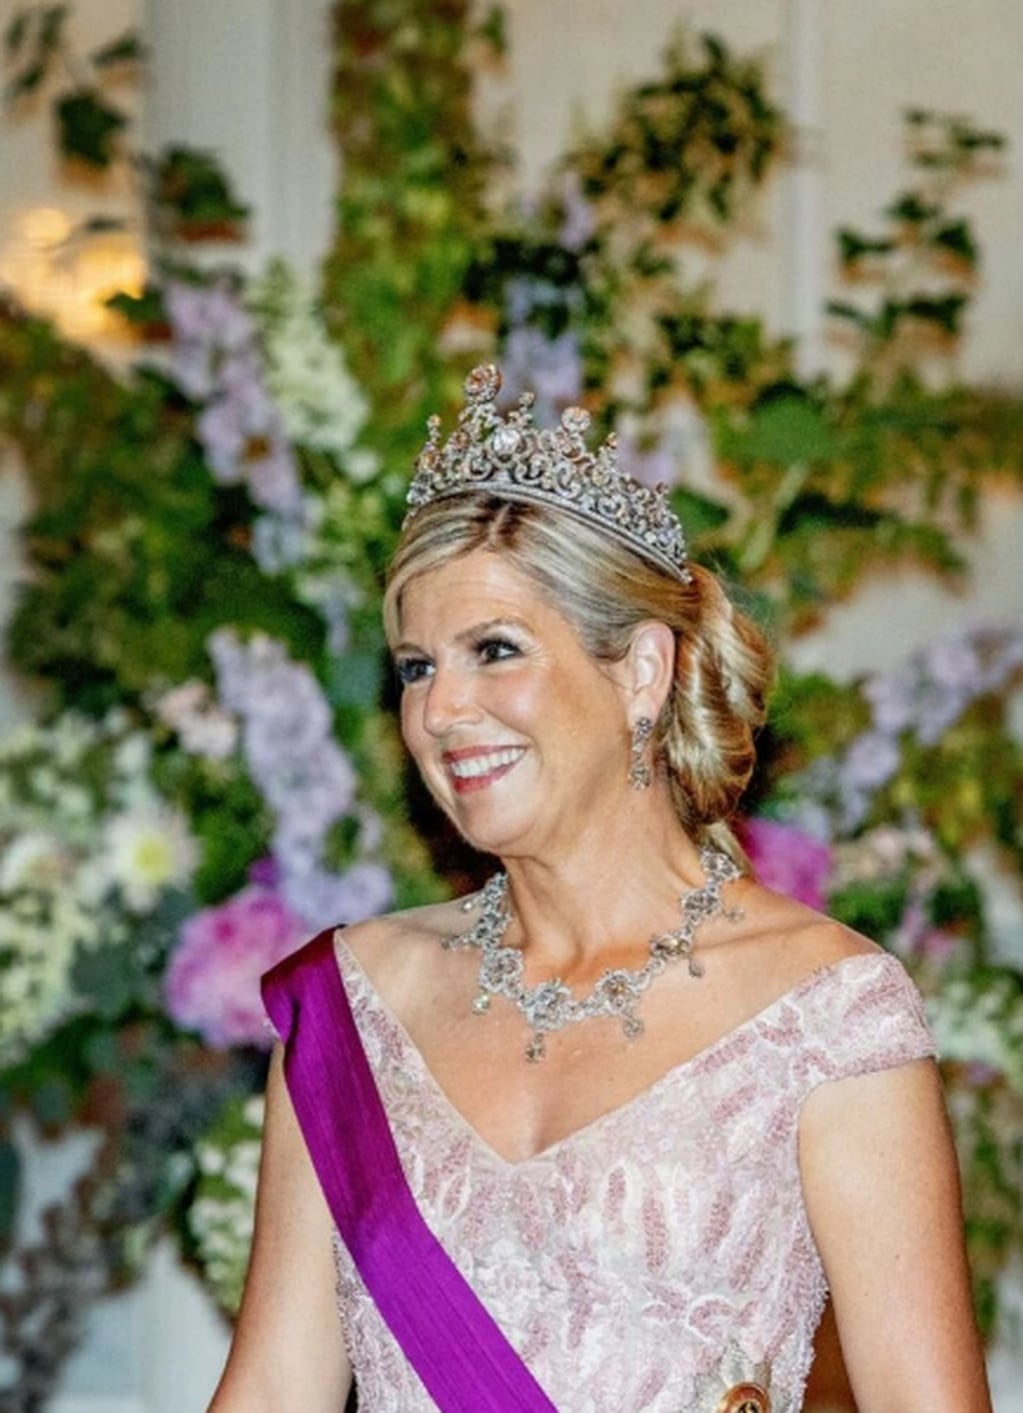 La reina de Países Bajos se encuentra en Bélgica debido a una visita de Estado y deslumbró con el imponente vestido que eligió lucir.